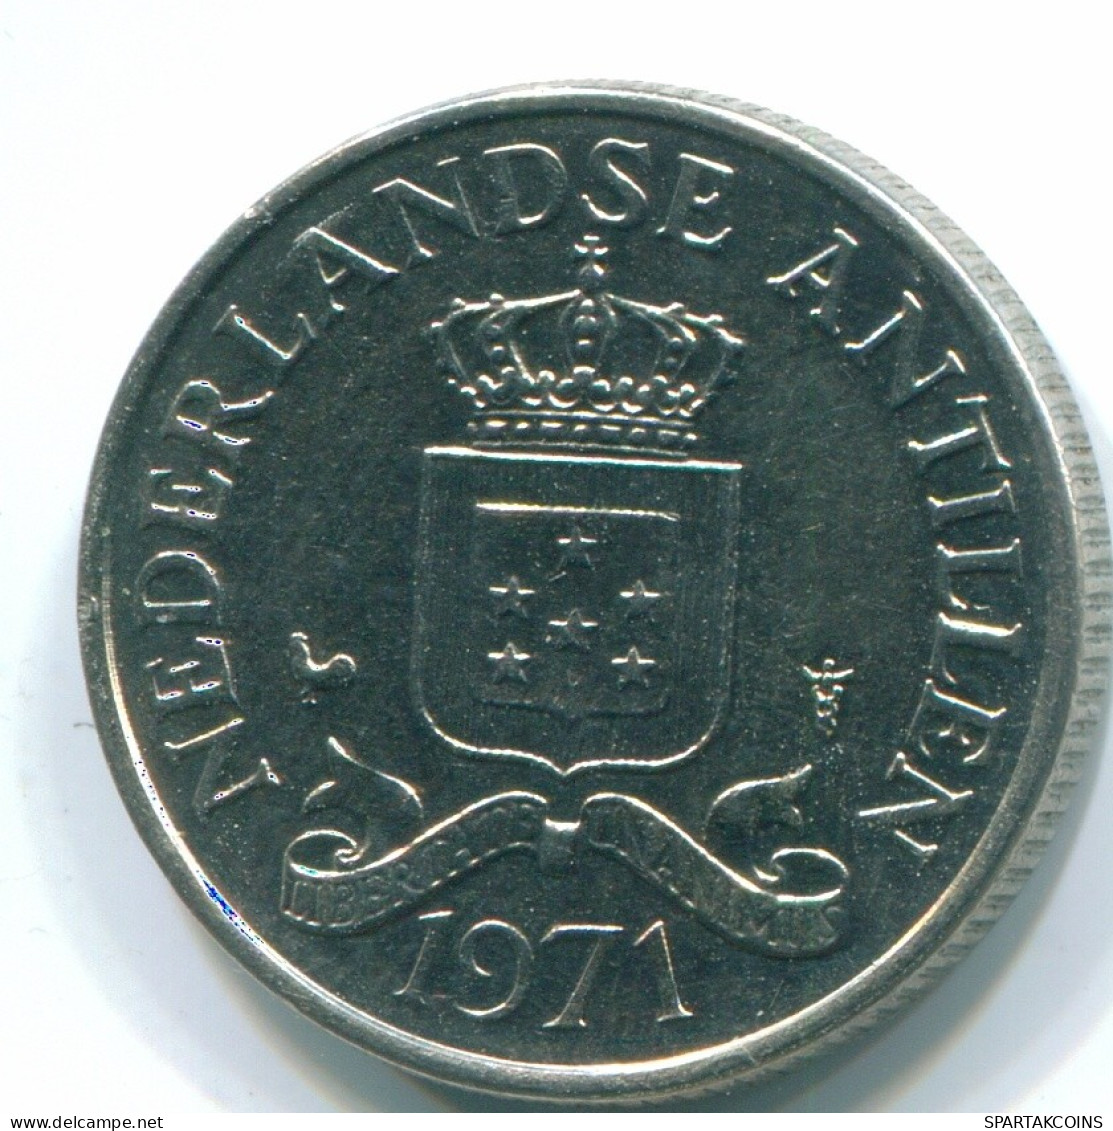 25 CENTS 1971 NIEDERLÄNDISCHE ANTILLEN Nickel Koloniale Münze #S11577.D.A - Antilles Néerlandaises